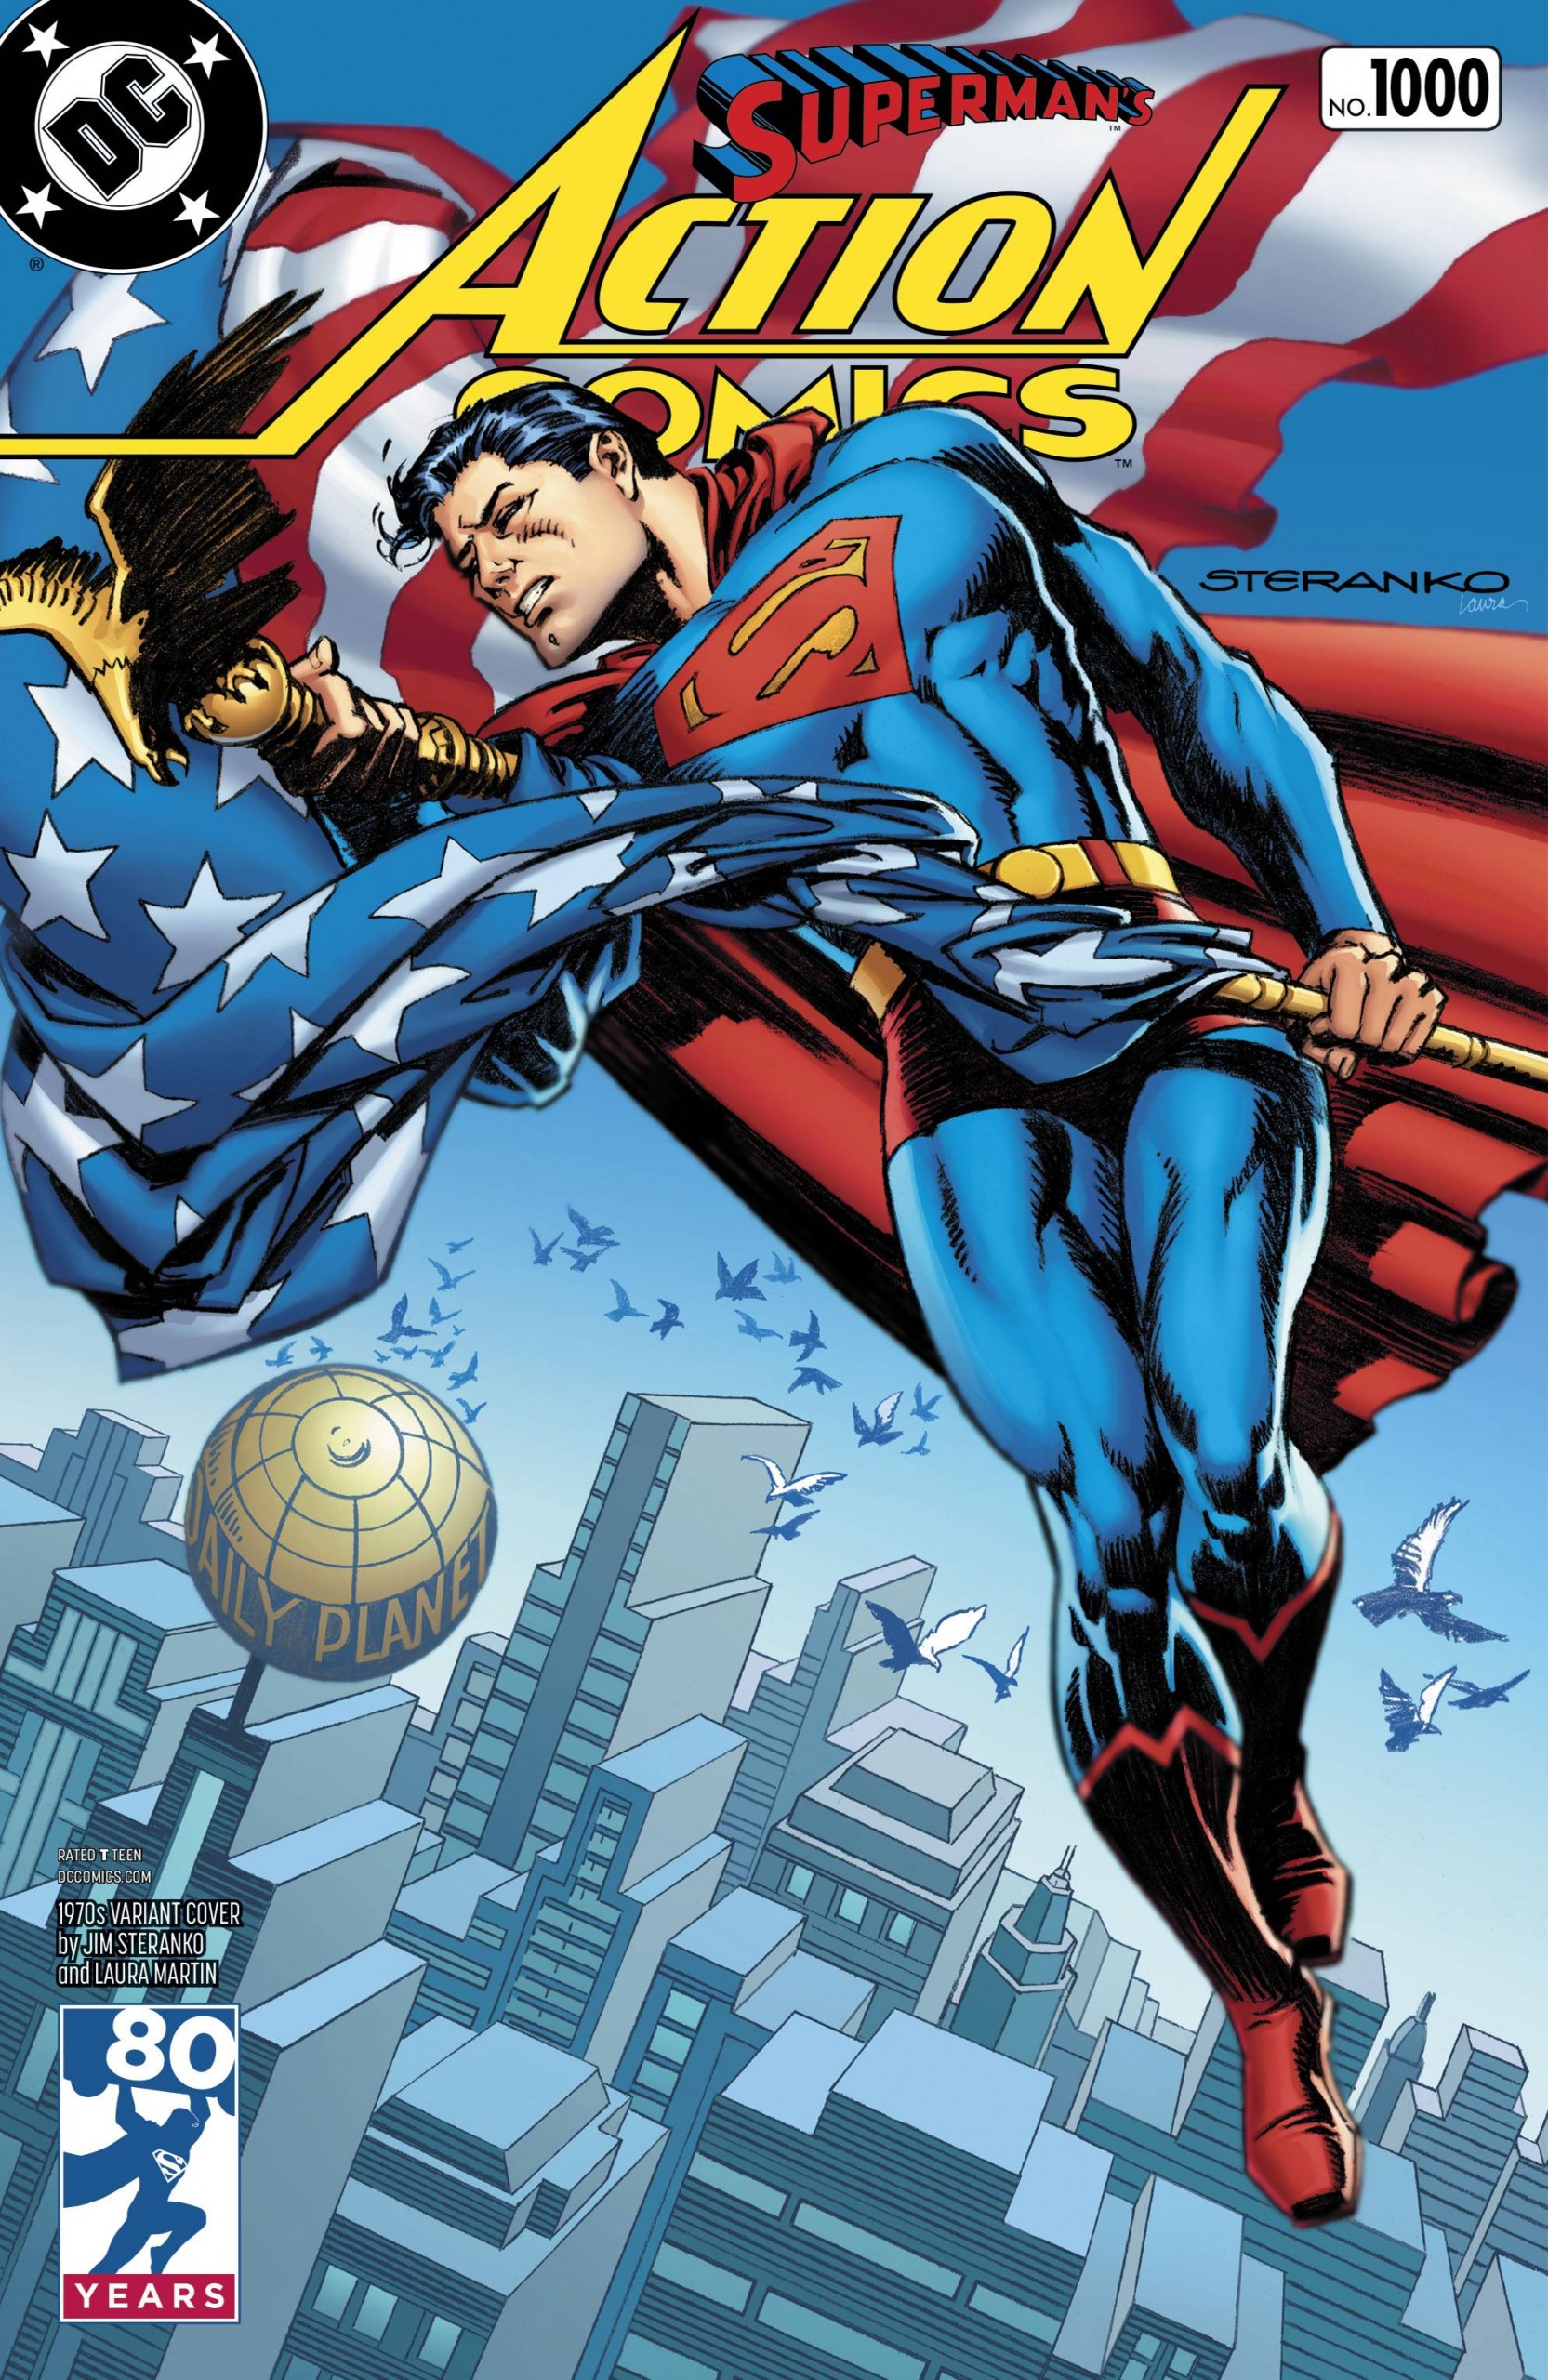 Superman Action Comics #1000 1970s Variant 2016 Comics – Cosmic Comics